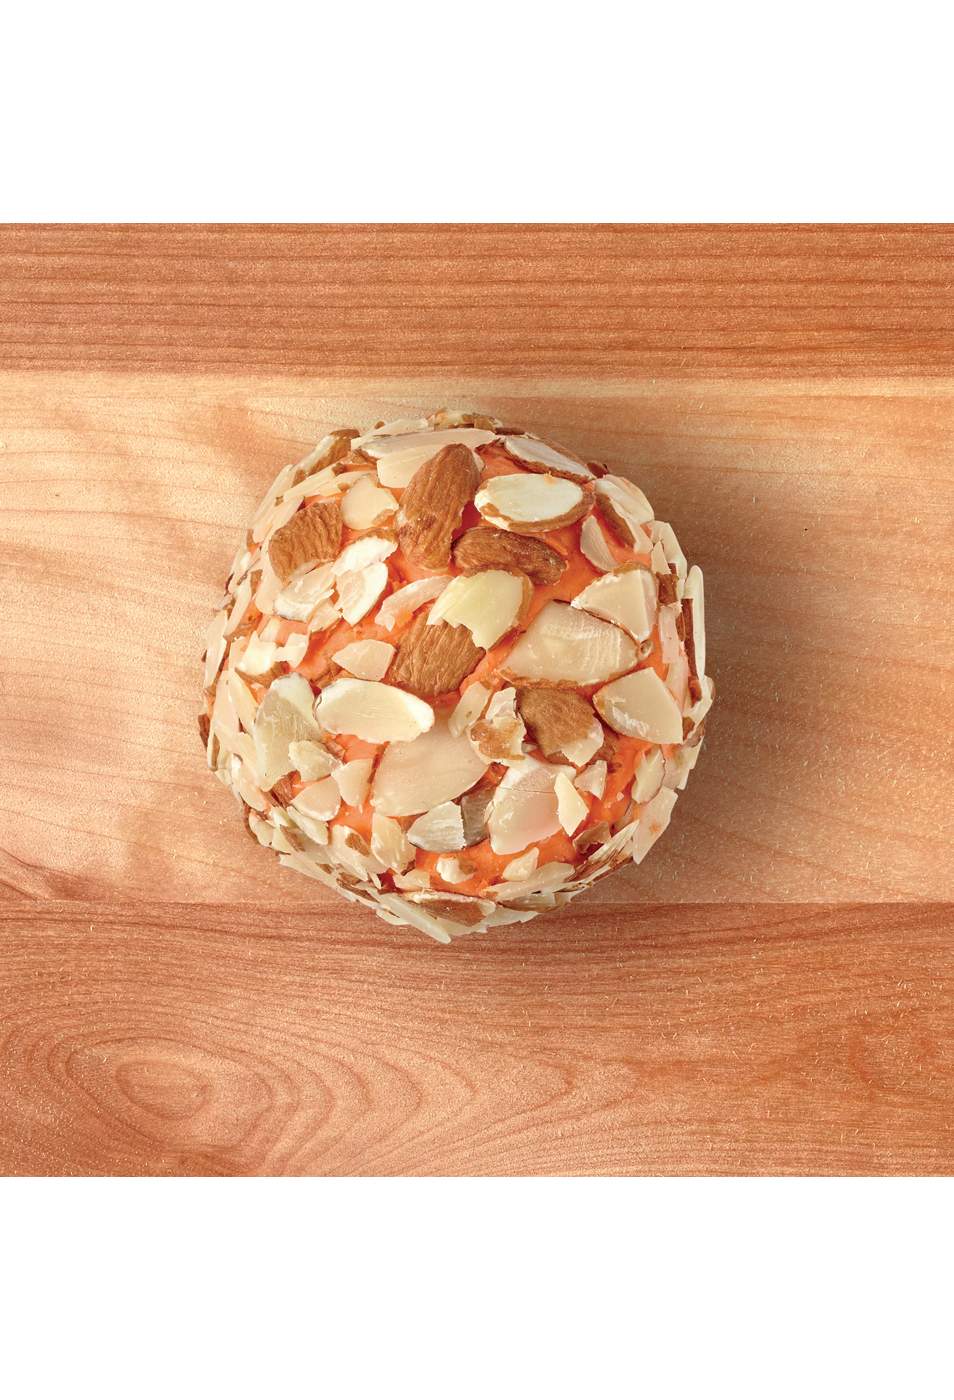 H-E-B Deli Port Wine Cheese Ball – Cheddar Almond; image 4 of 4